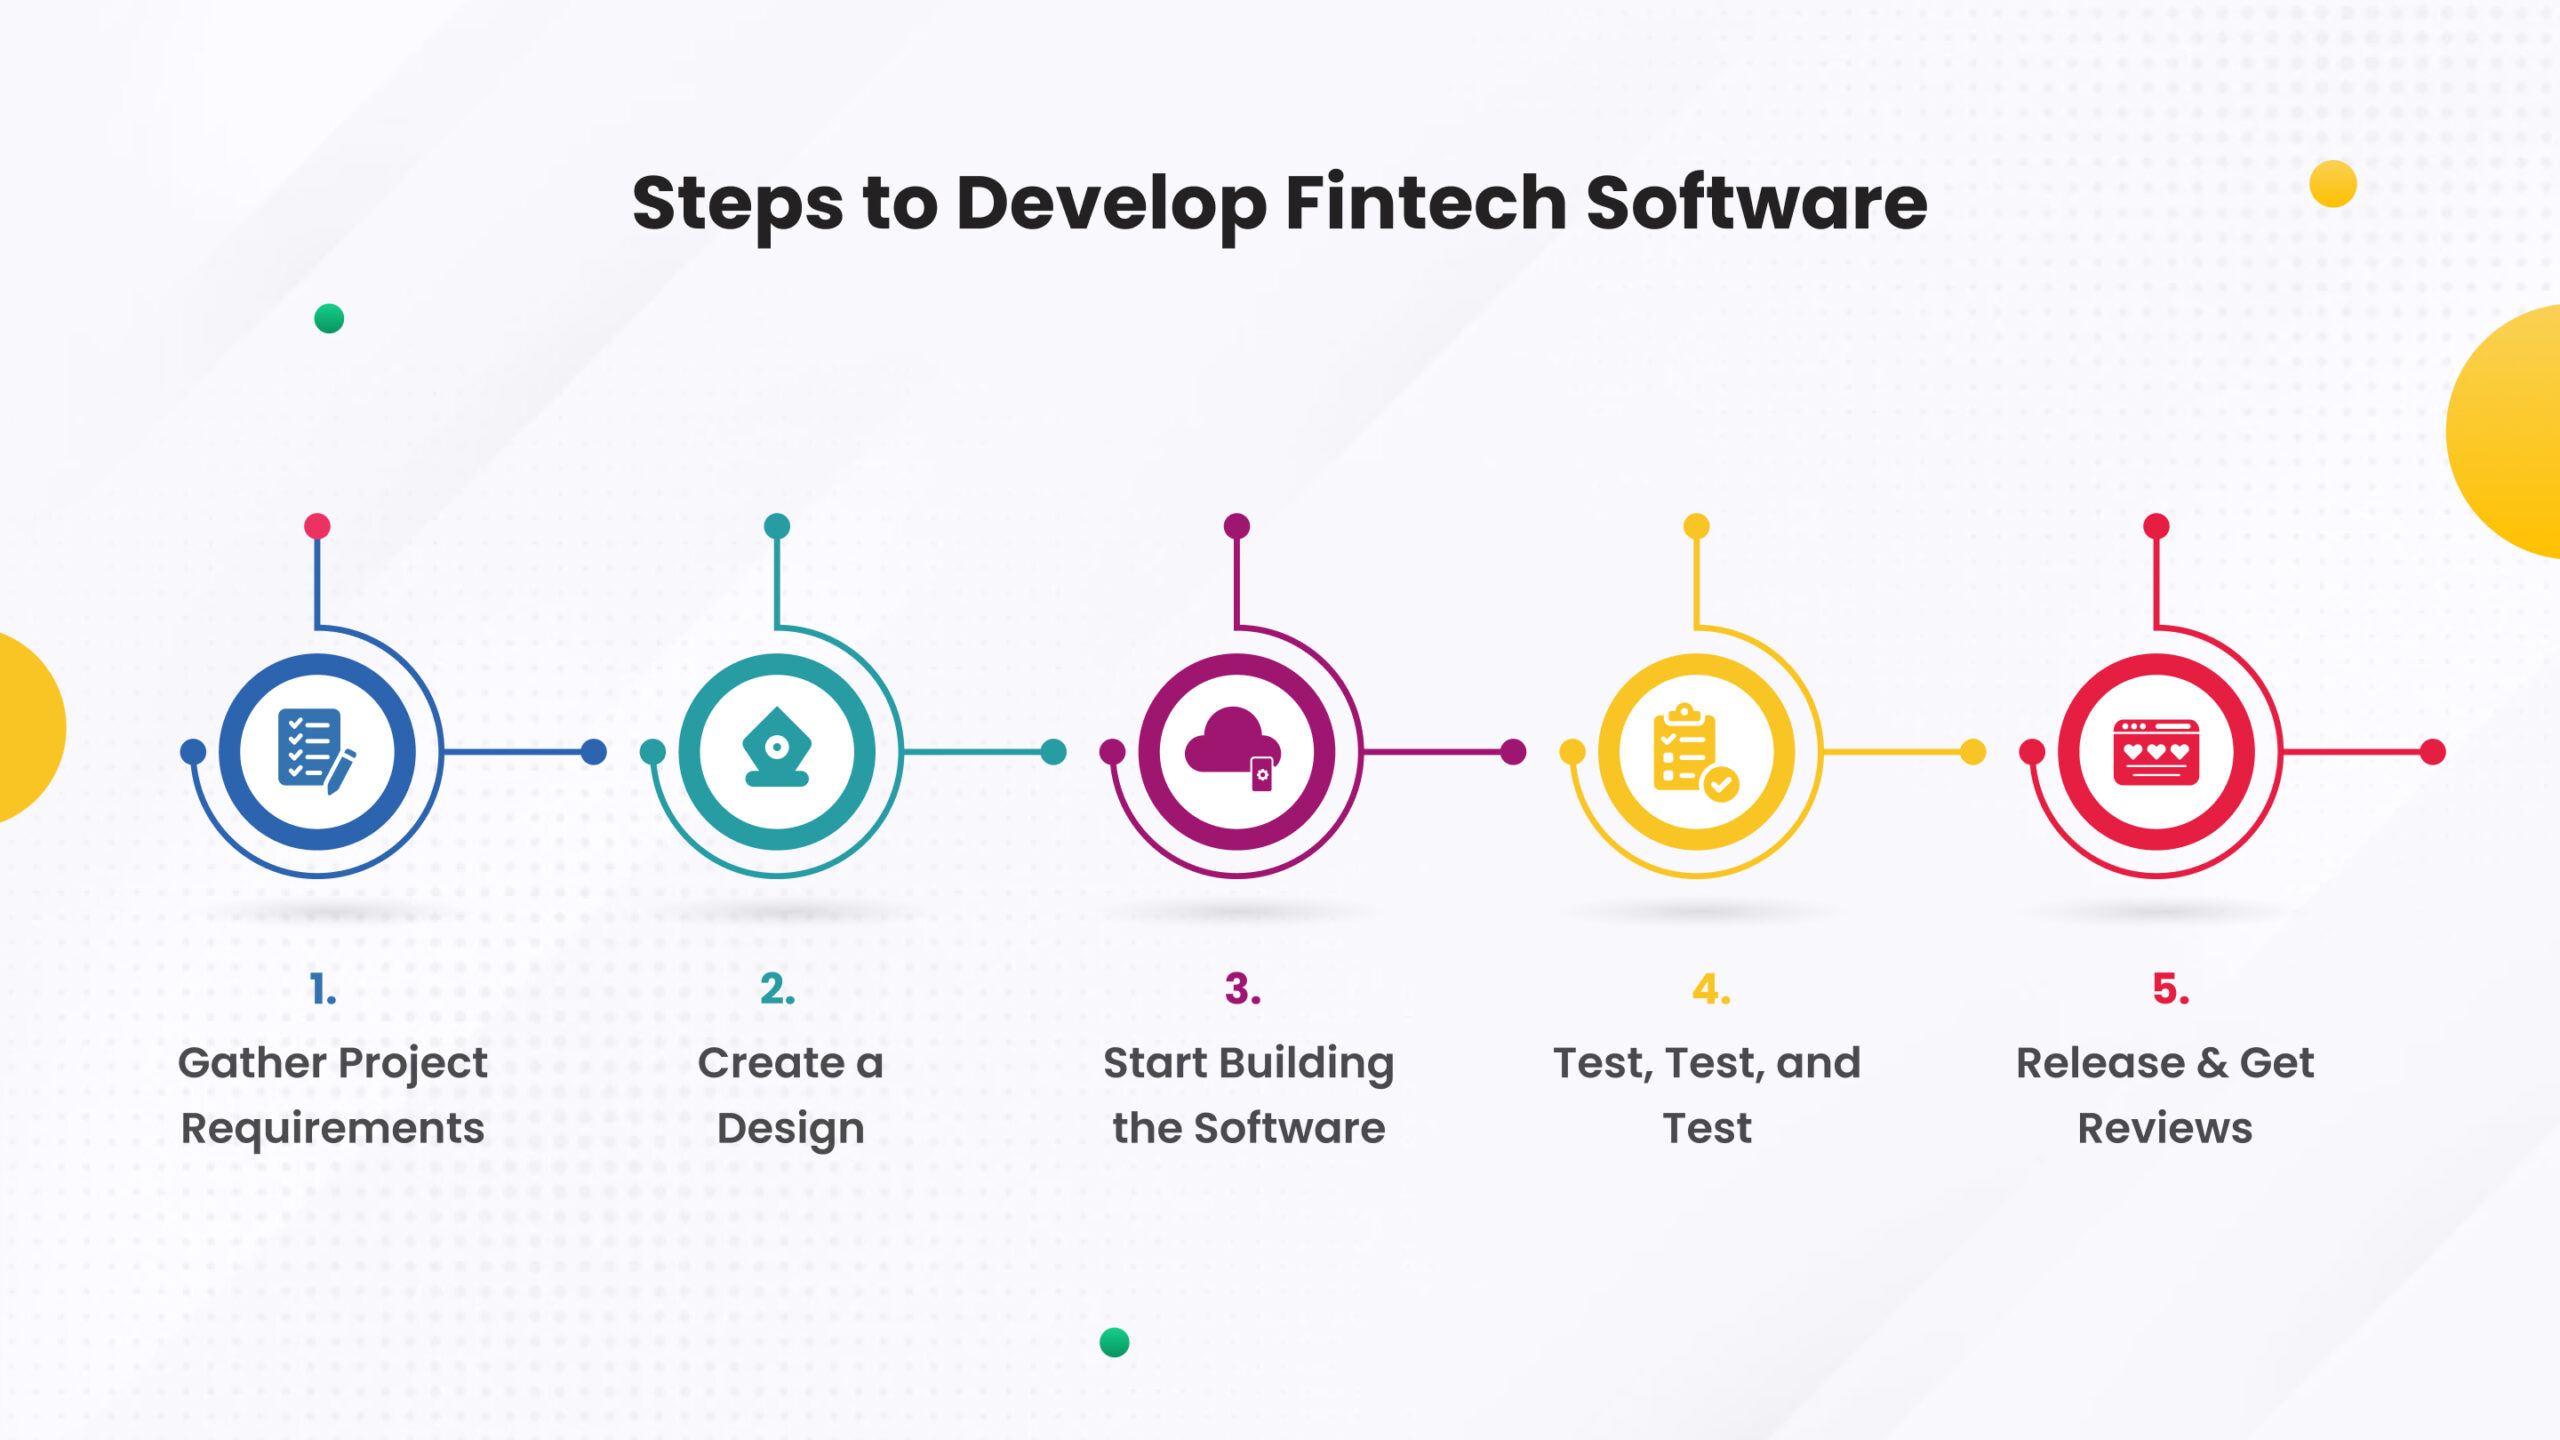 Steps to develop fintech software